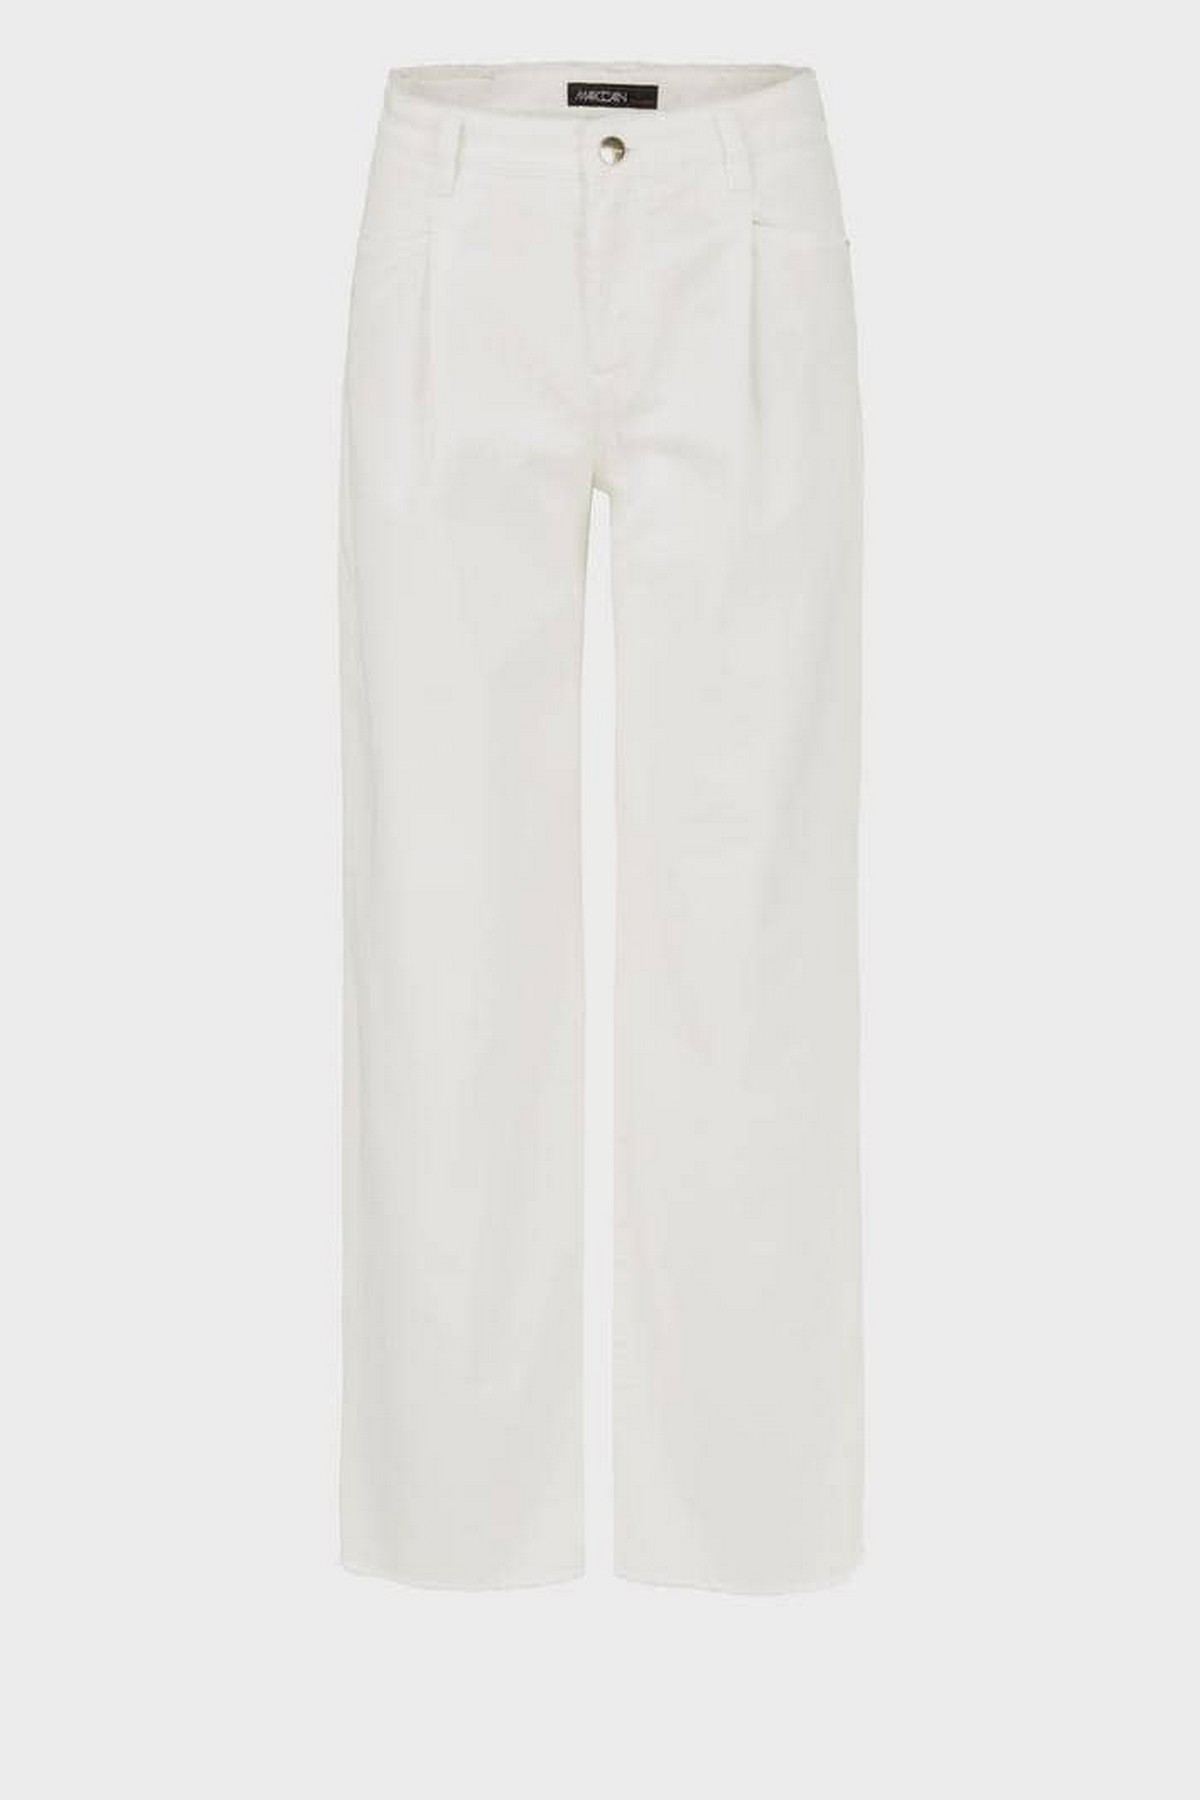 Broek jeans wijd model in de kleur off white van het merk Marc Cain